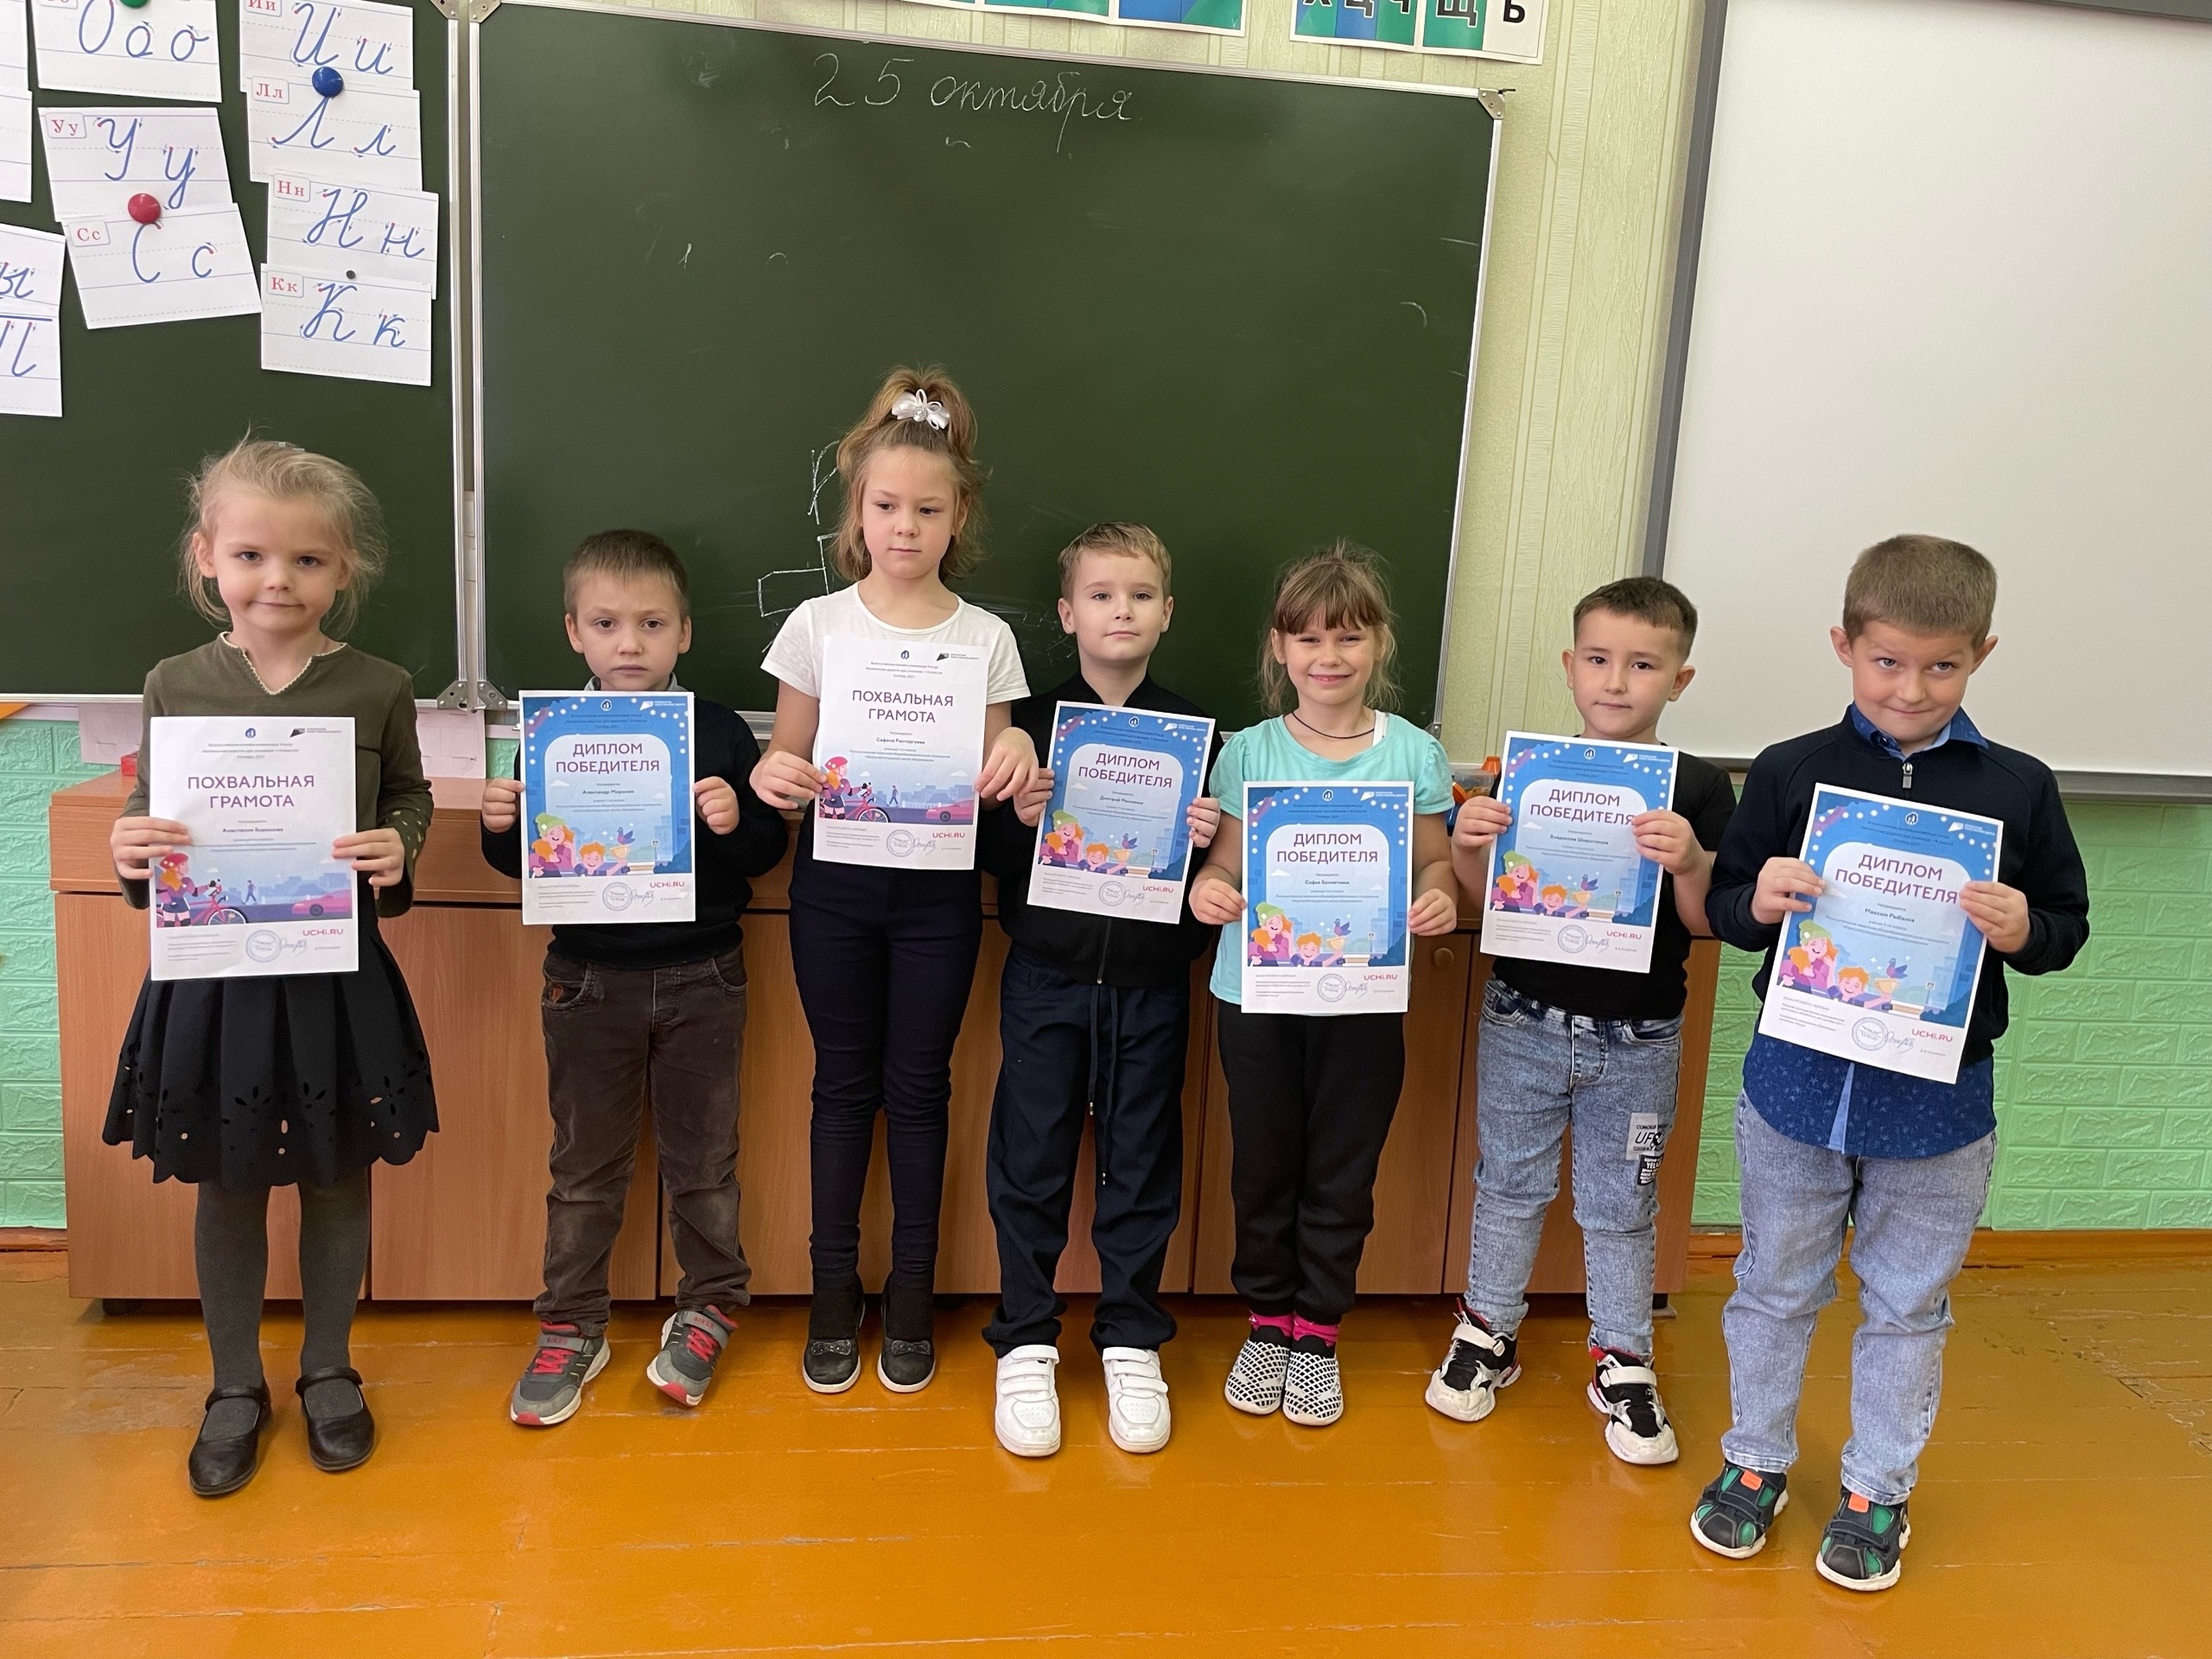 Учащиеся 1 класса получили свои первые грамоты за участие во Всероссийской онлайн-олимпиаде «Безопасные дороги» на платформе Учи.ру.